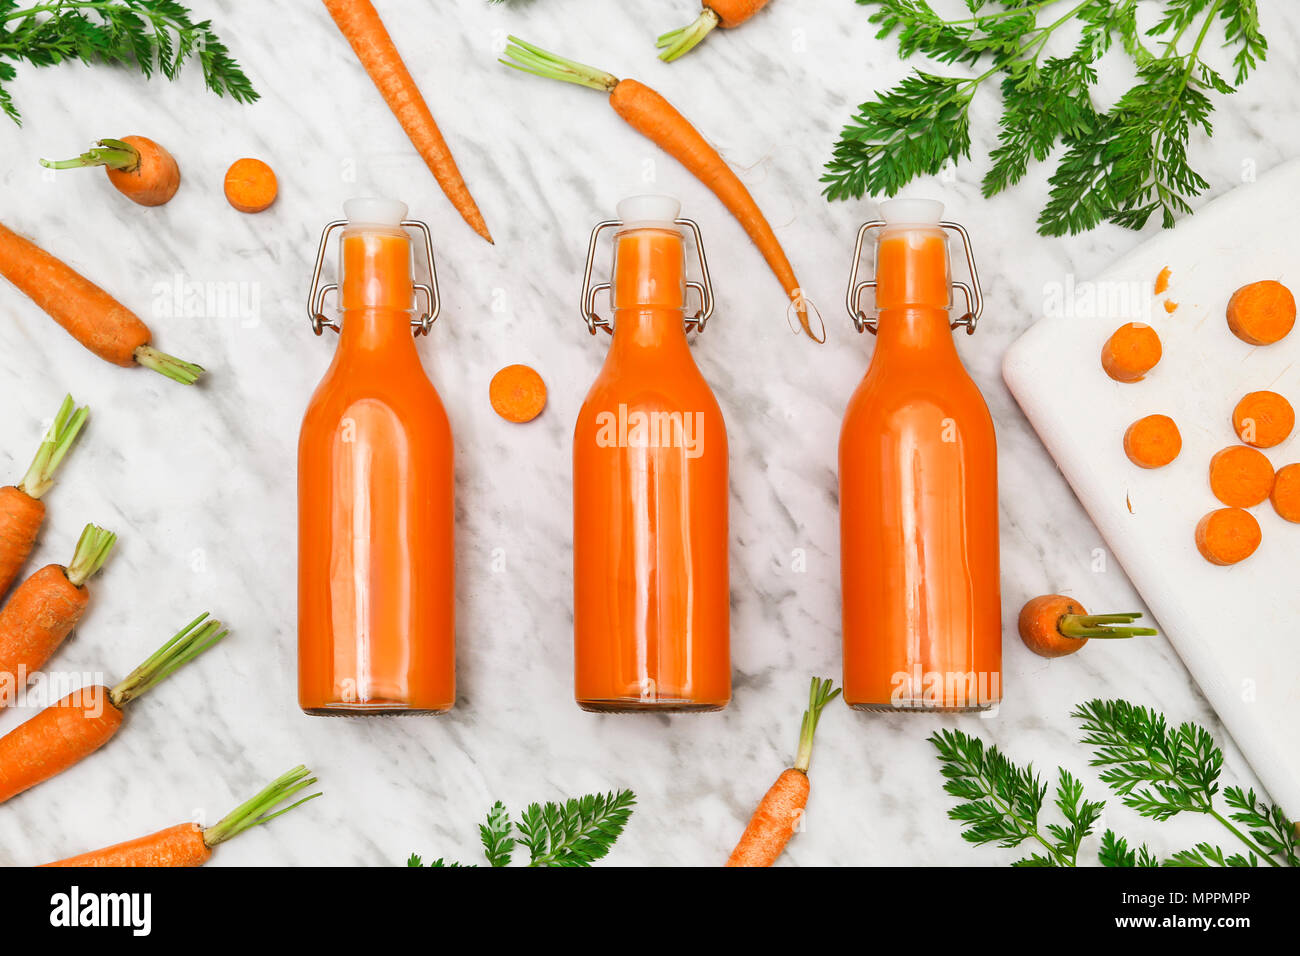 Homemade carrot juice in bottles Stock Photo